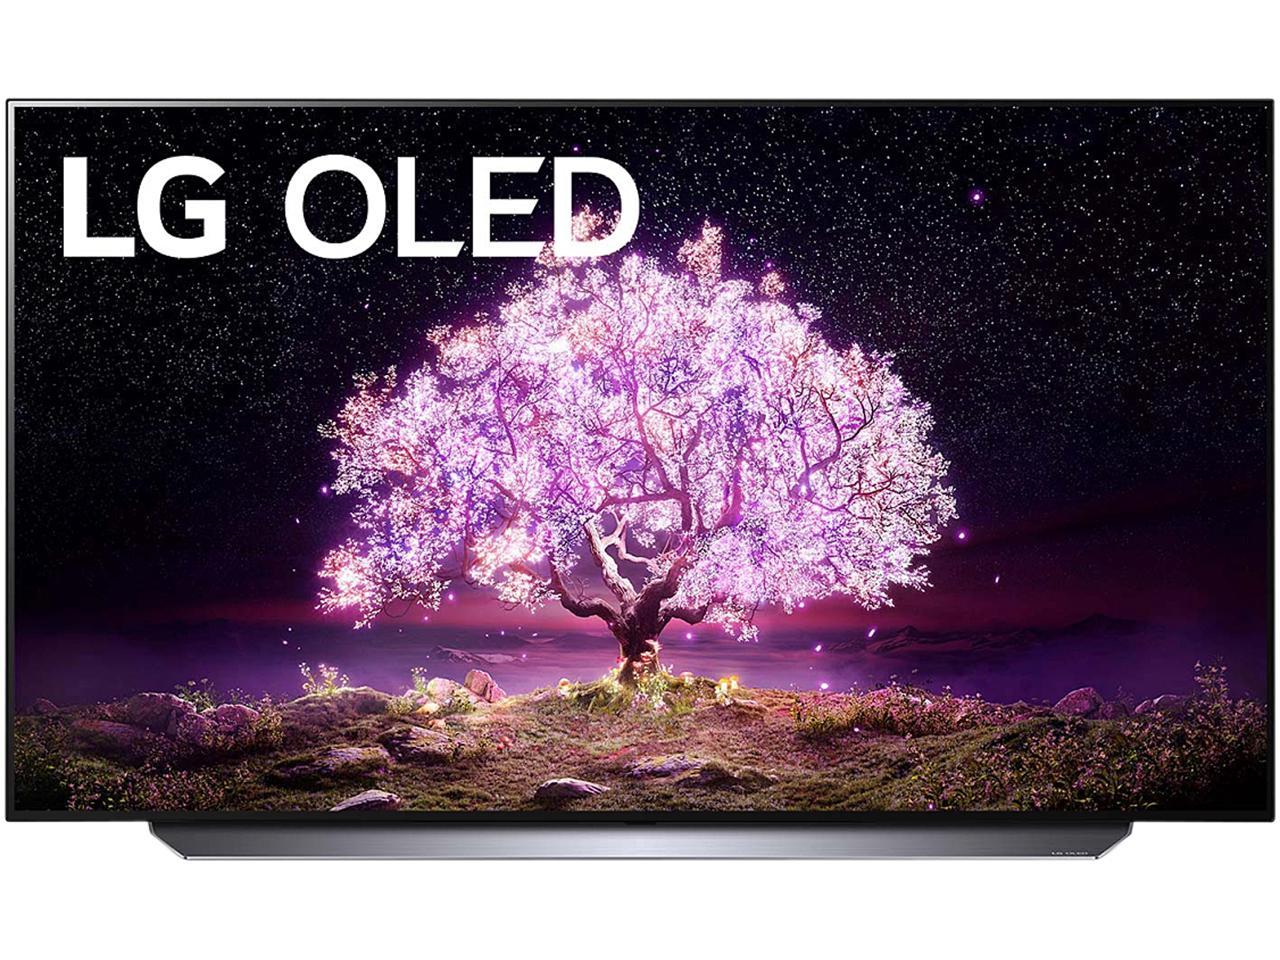 LG OLED TV Superbowl Sale - OLED's Starting at $1096.99